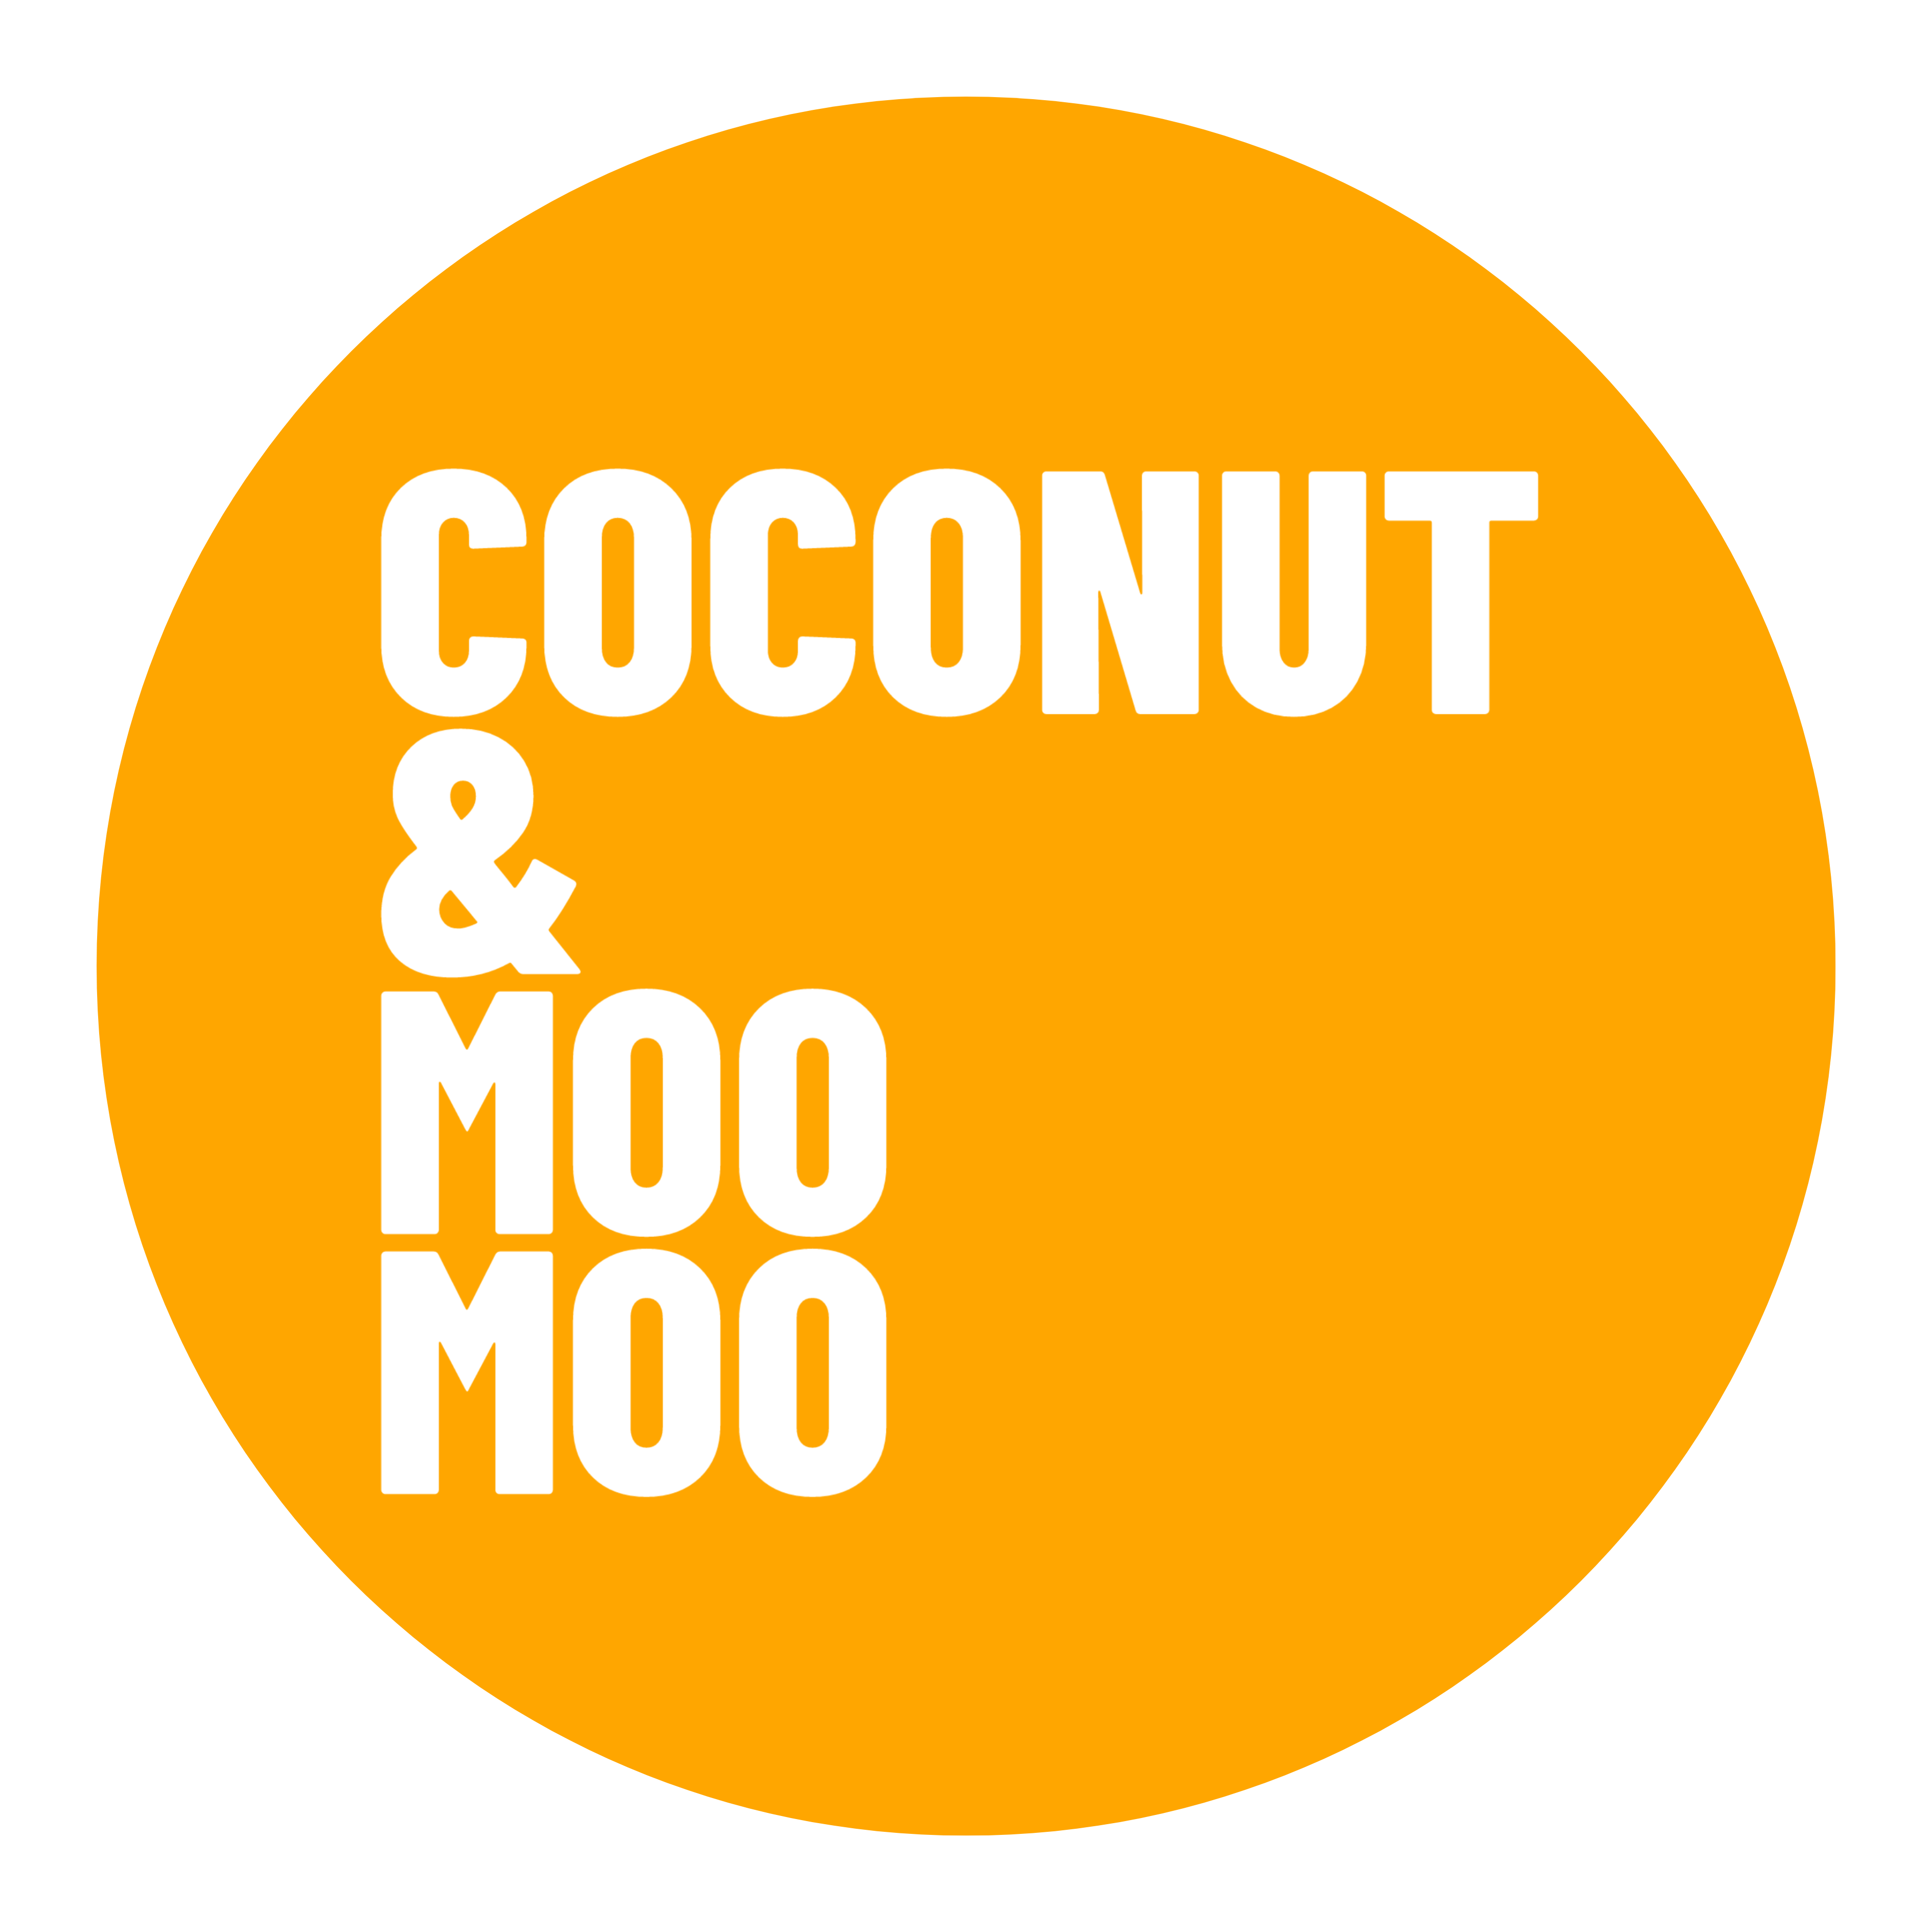 Coconut & Moo Moo